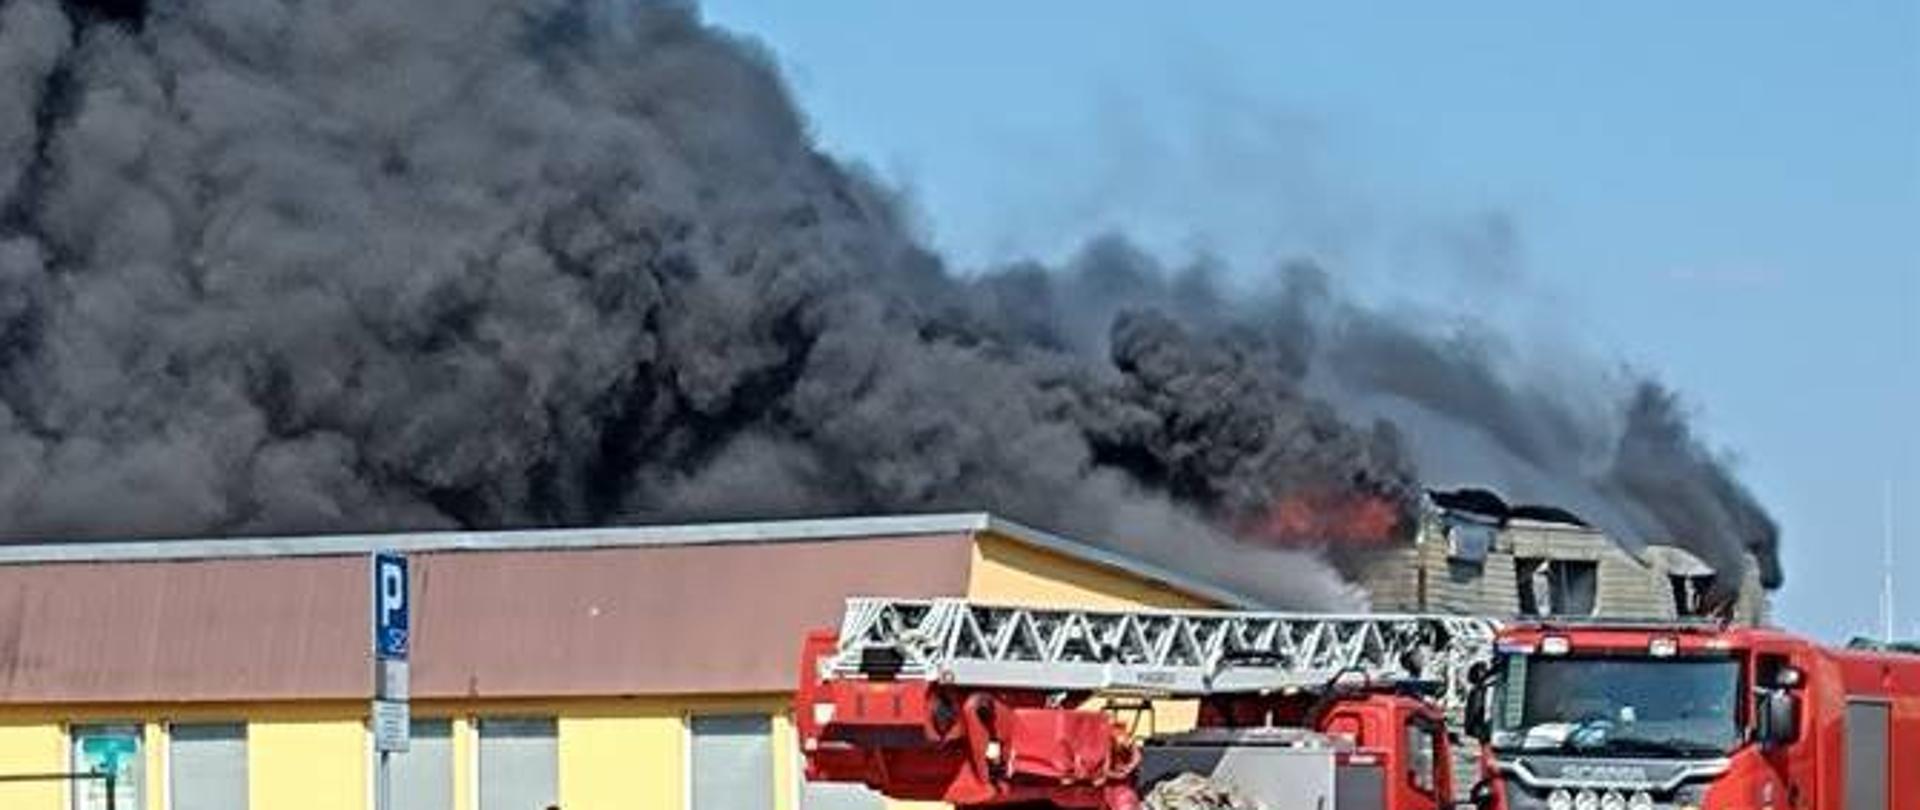 Gęsty dym unoszący się na dachami budynków, na pierwszym planie dwa samochody strażackie i strażak